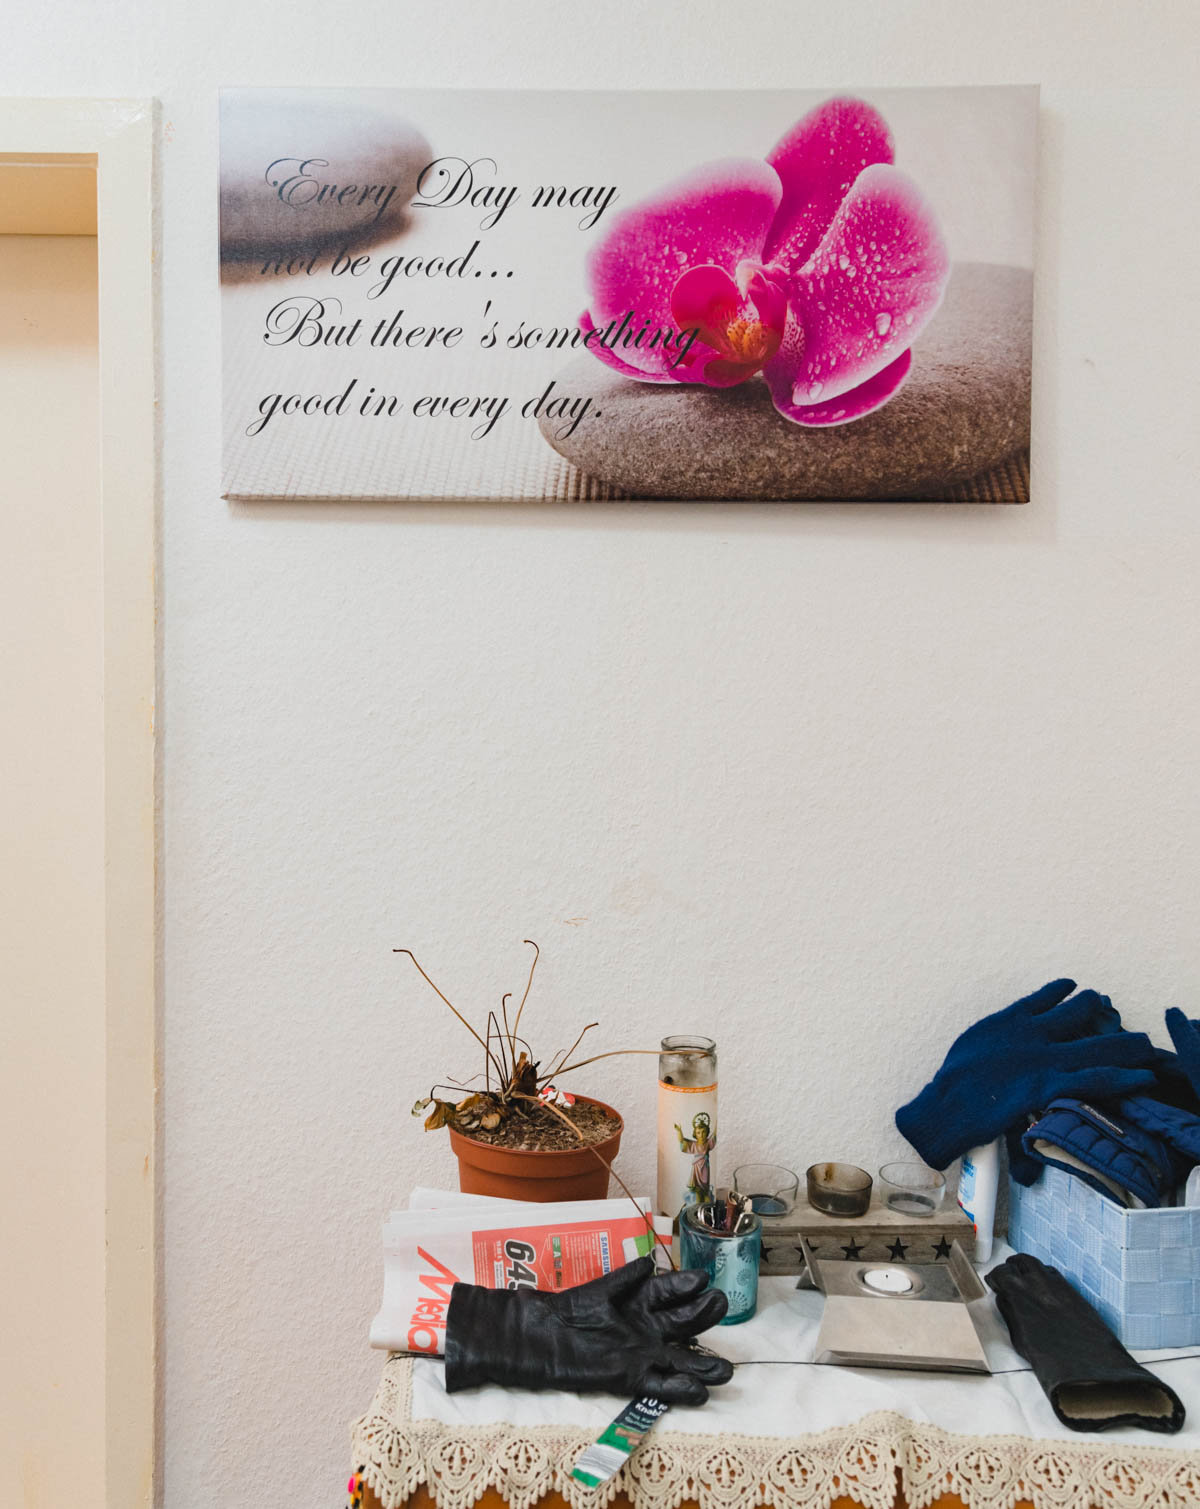 Die Wand einer Wohnung: Ein Bild einer pinken Blüte, verziert mit einer Lebensweisheit, darunter eine Ablage, auf der unter anderem Handschuhe, Teelichter und ein Werbeprospekt liegen   (Foto: Christian Protte)